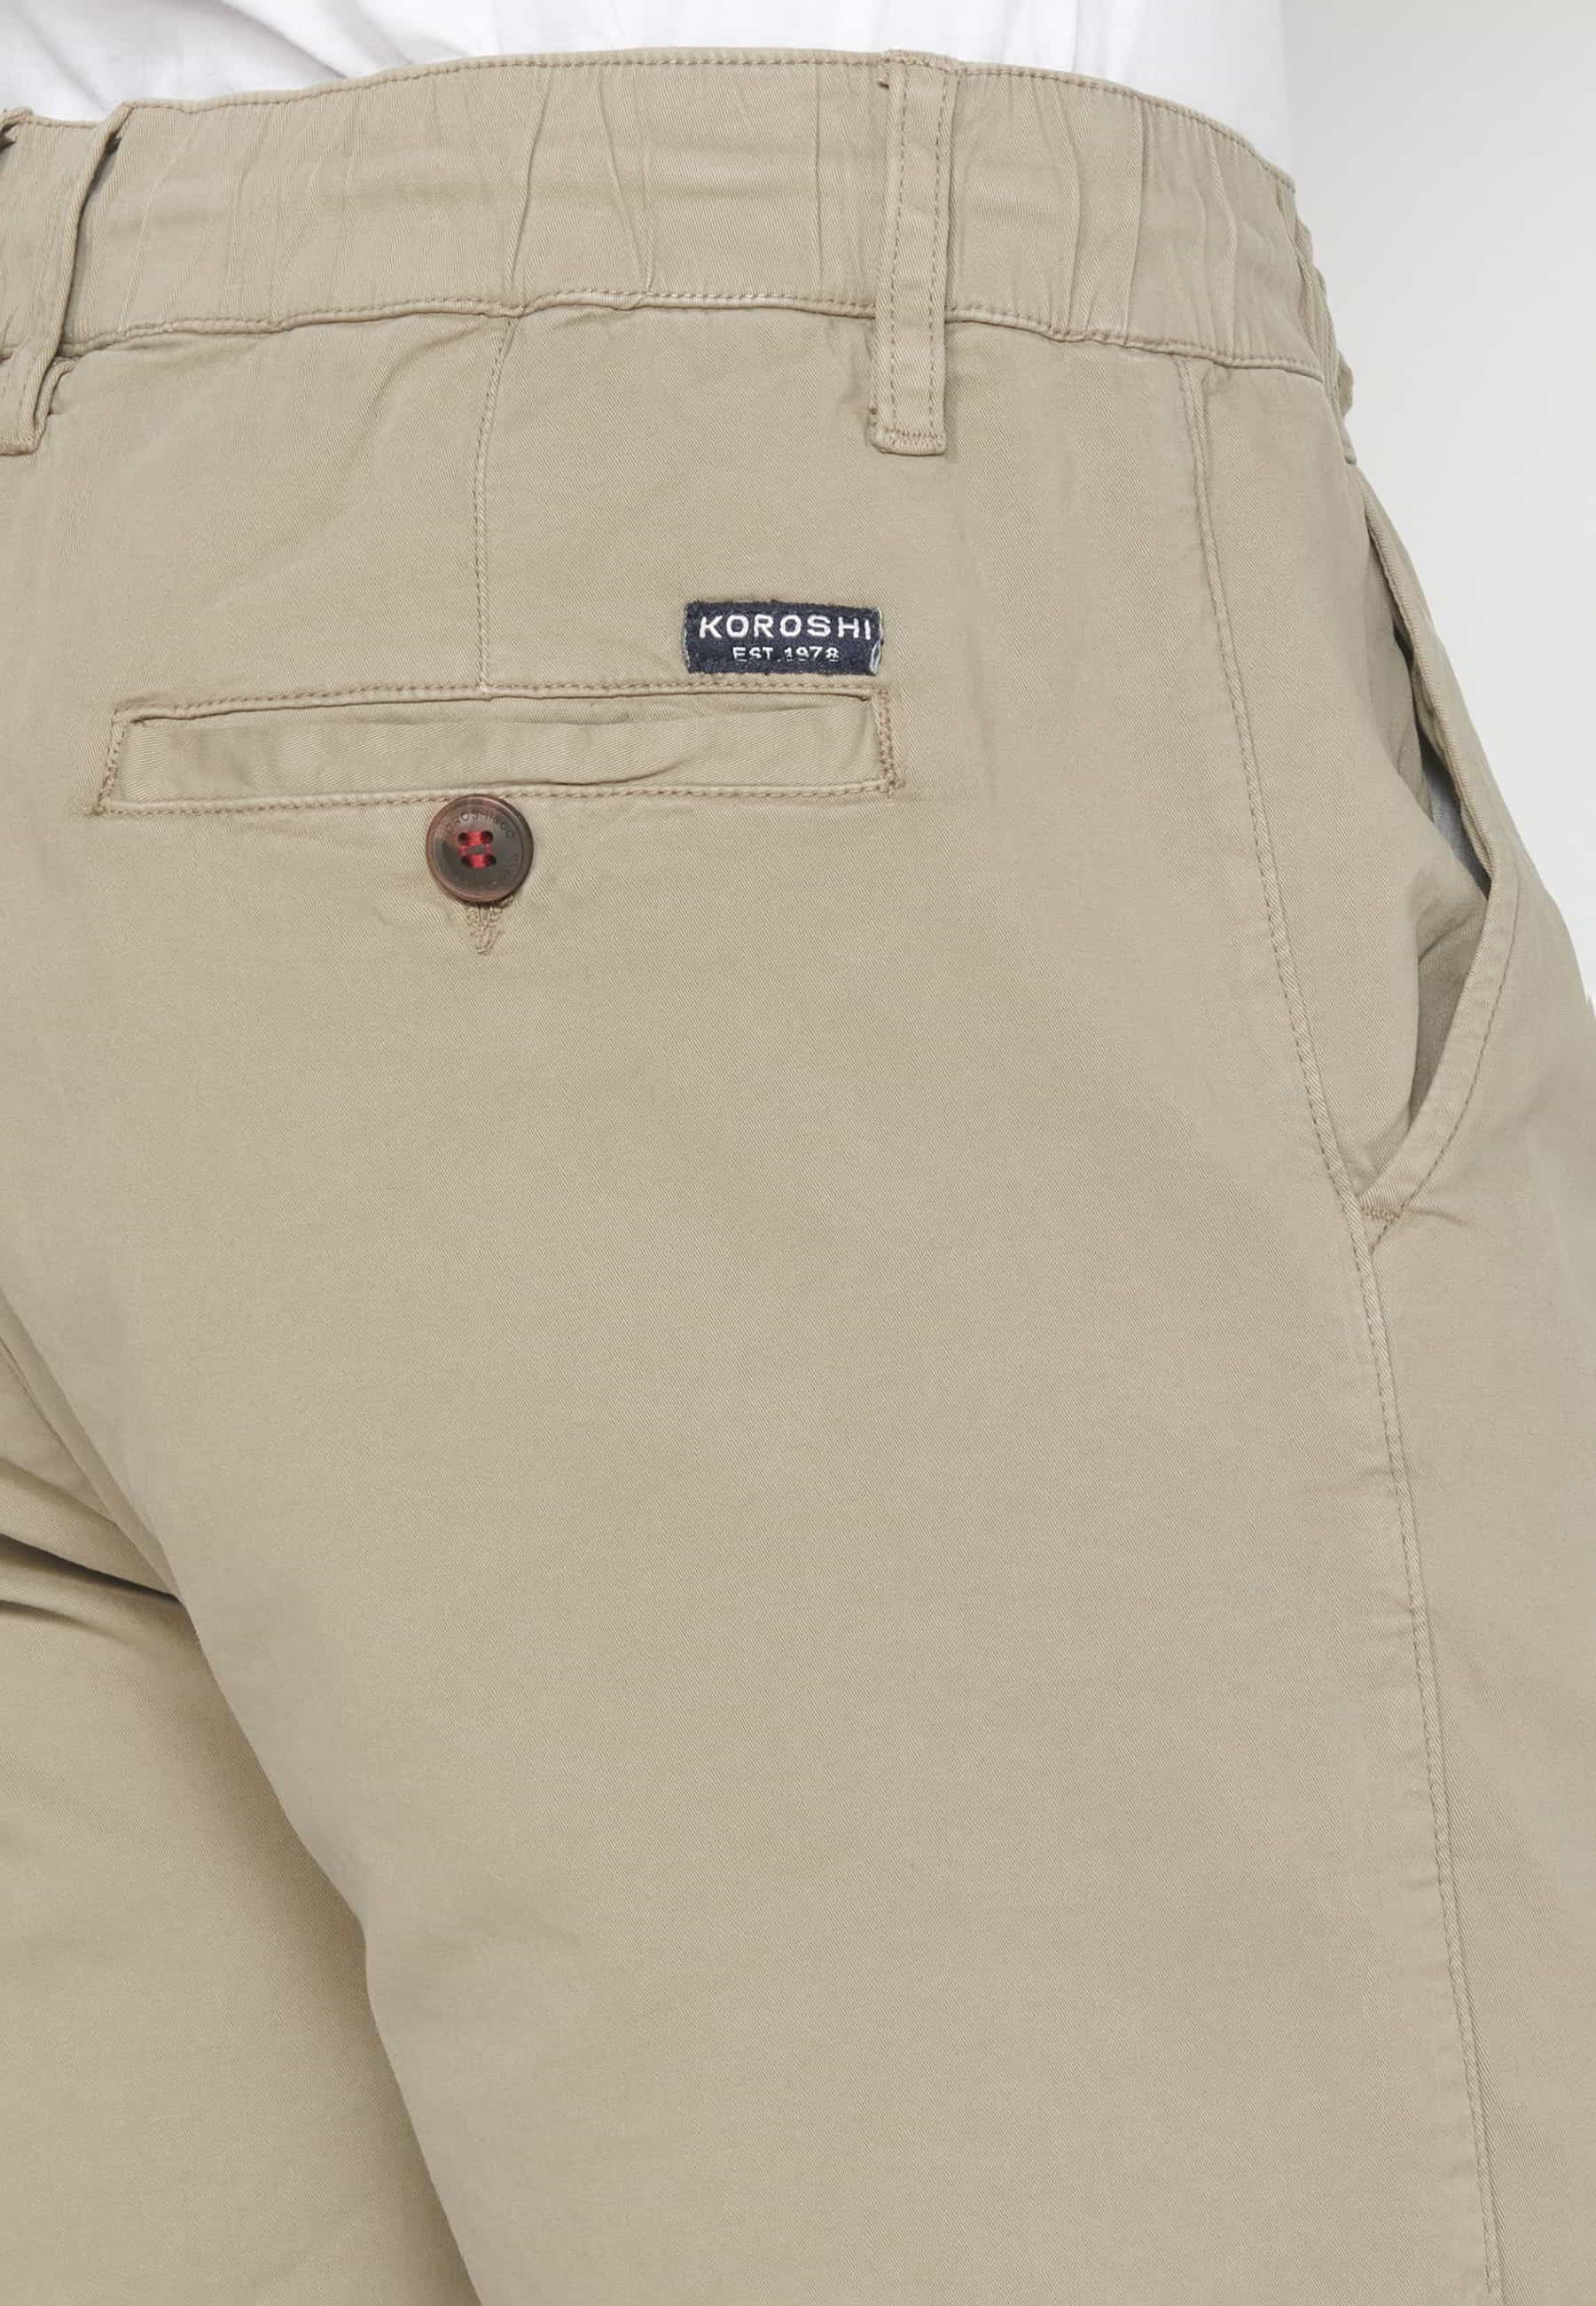 Pantalón corto Bermuda Vaquera Stretch Regular color Beige para Hombre